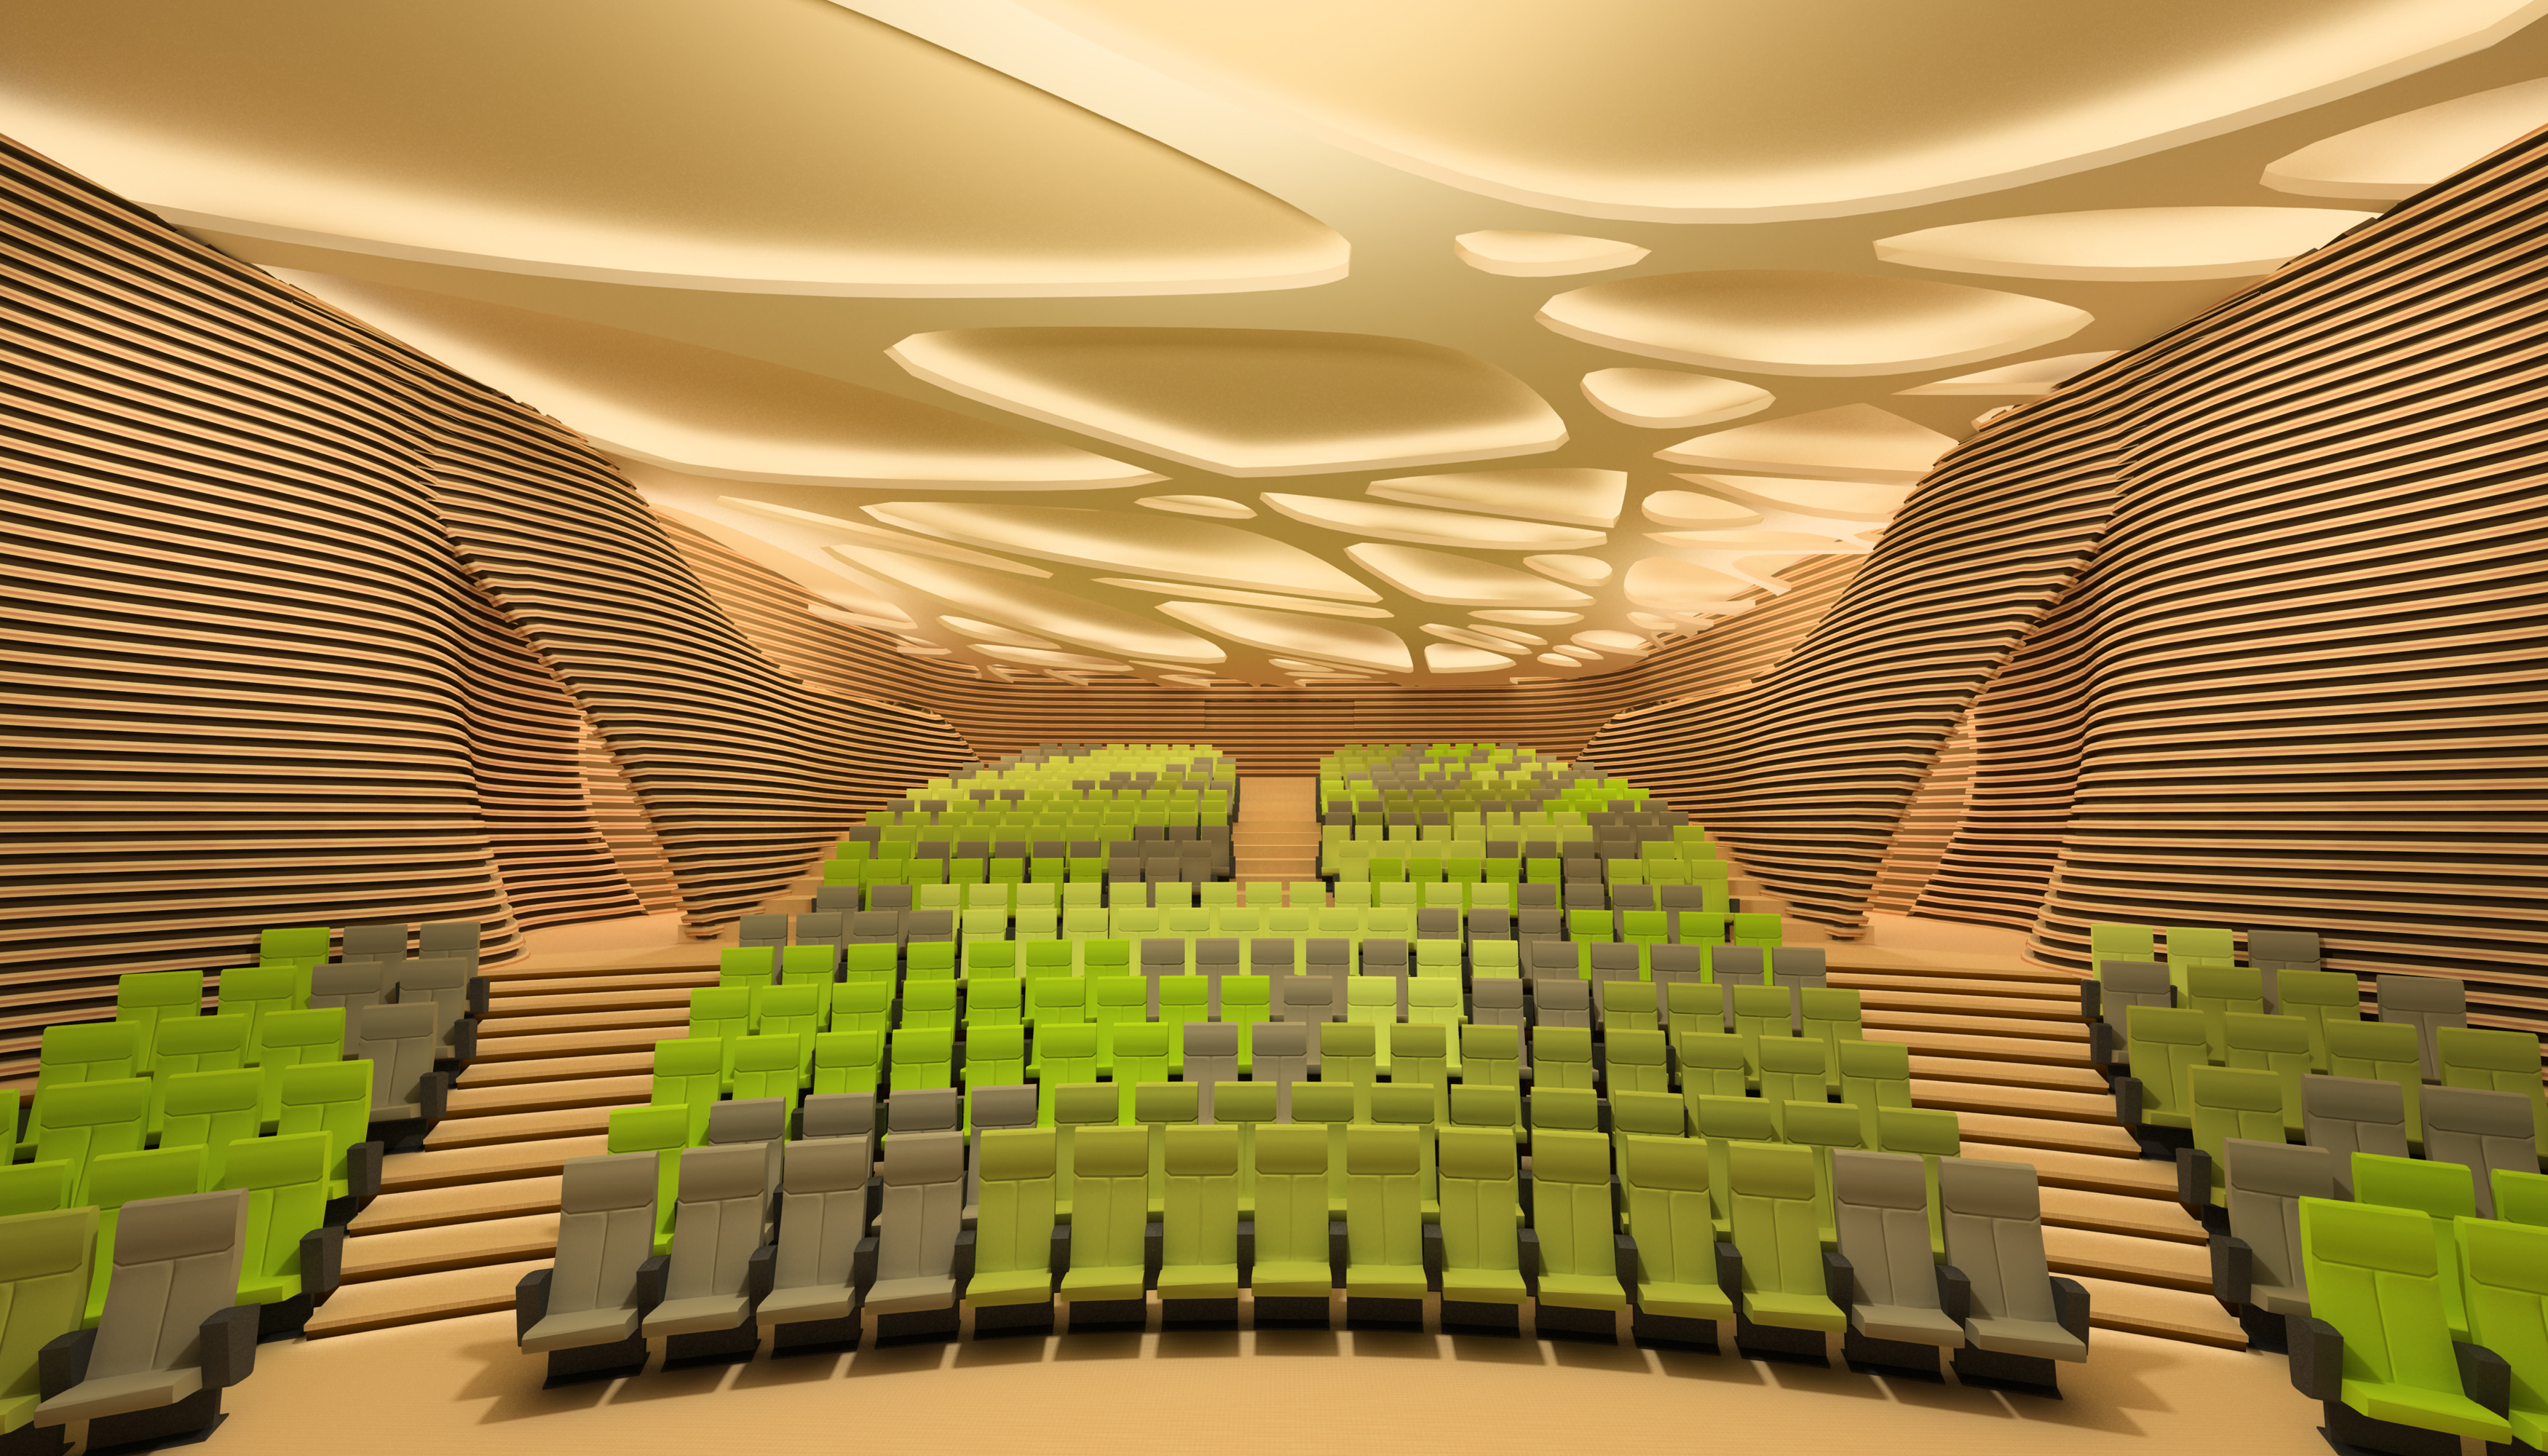 “Concrete Canopy” Auditorium and Movie Theater-4